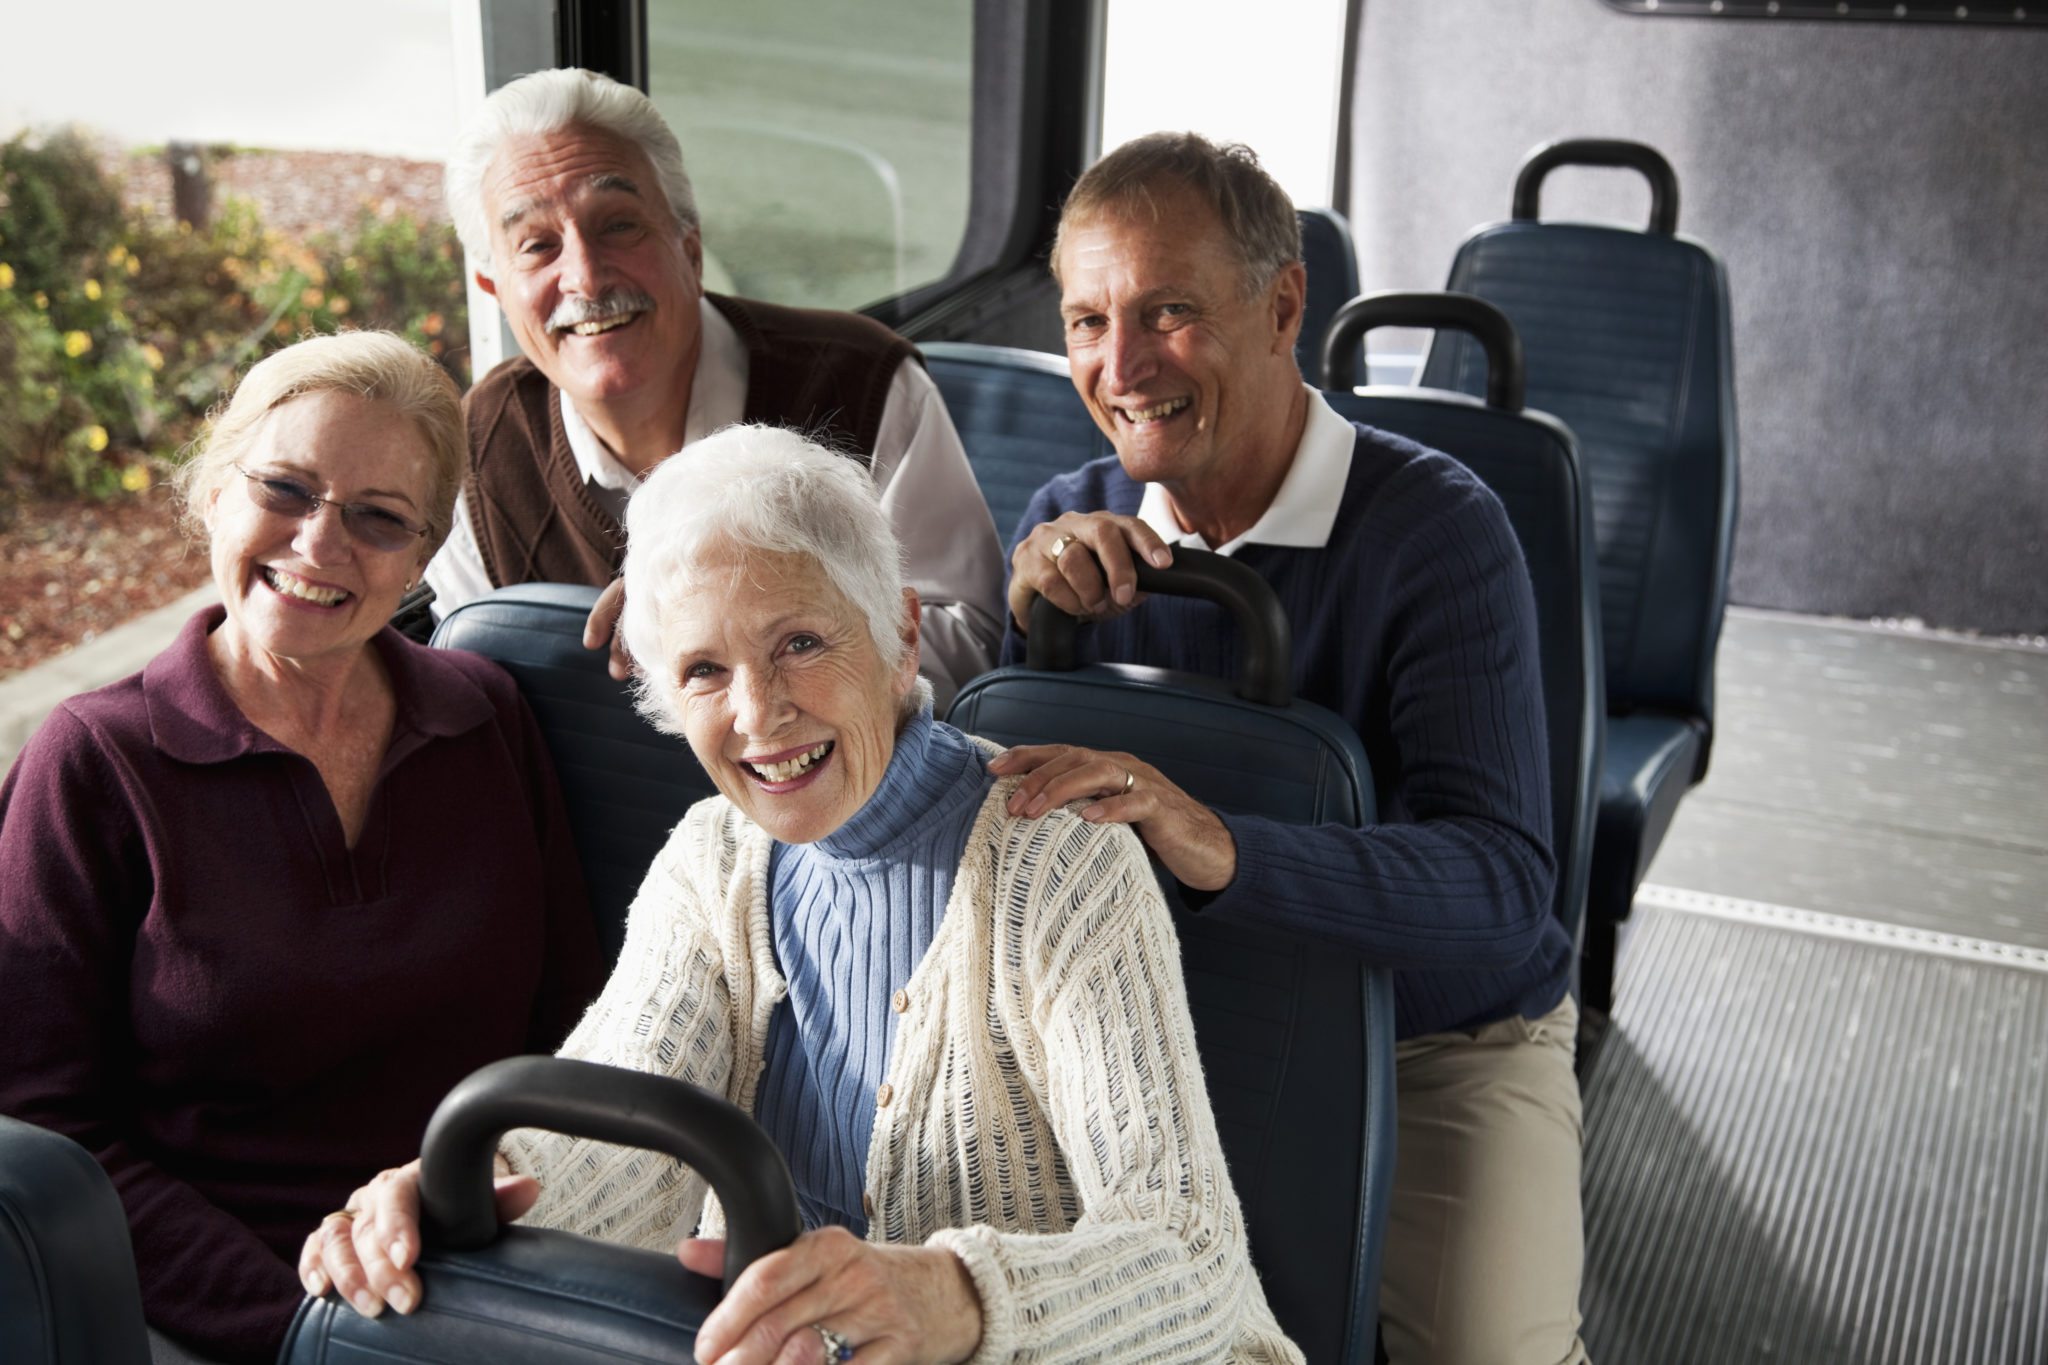 bus tours for seniors citizens